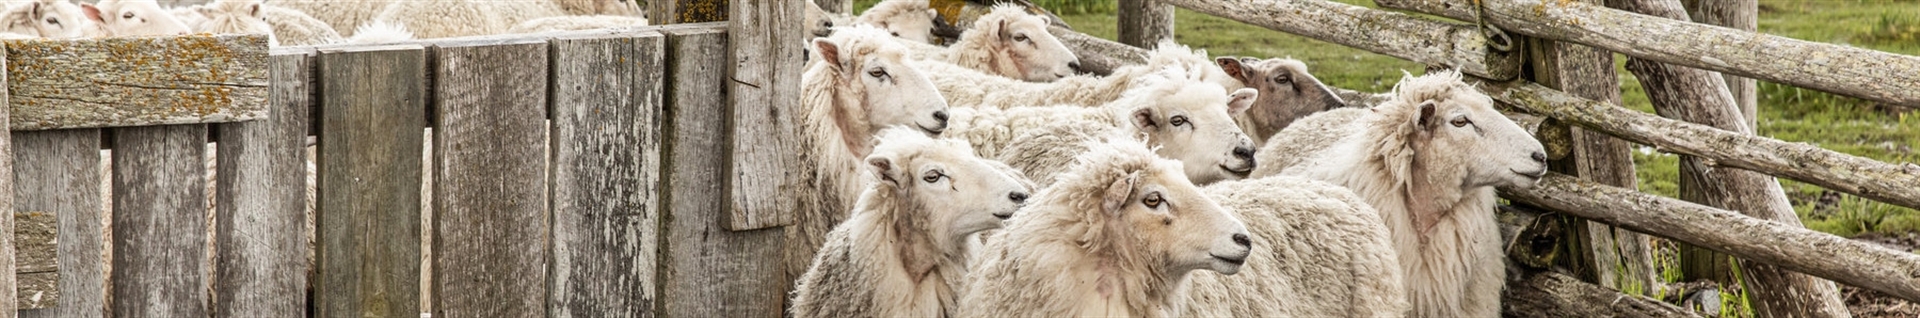 خرید و فروش گوسفند زنده | پرورش گوسفند